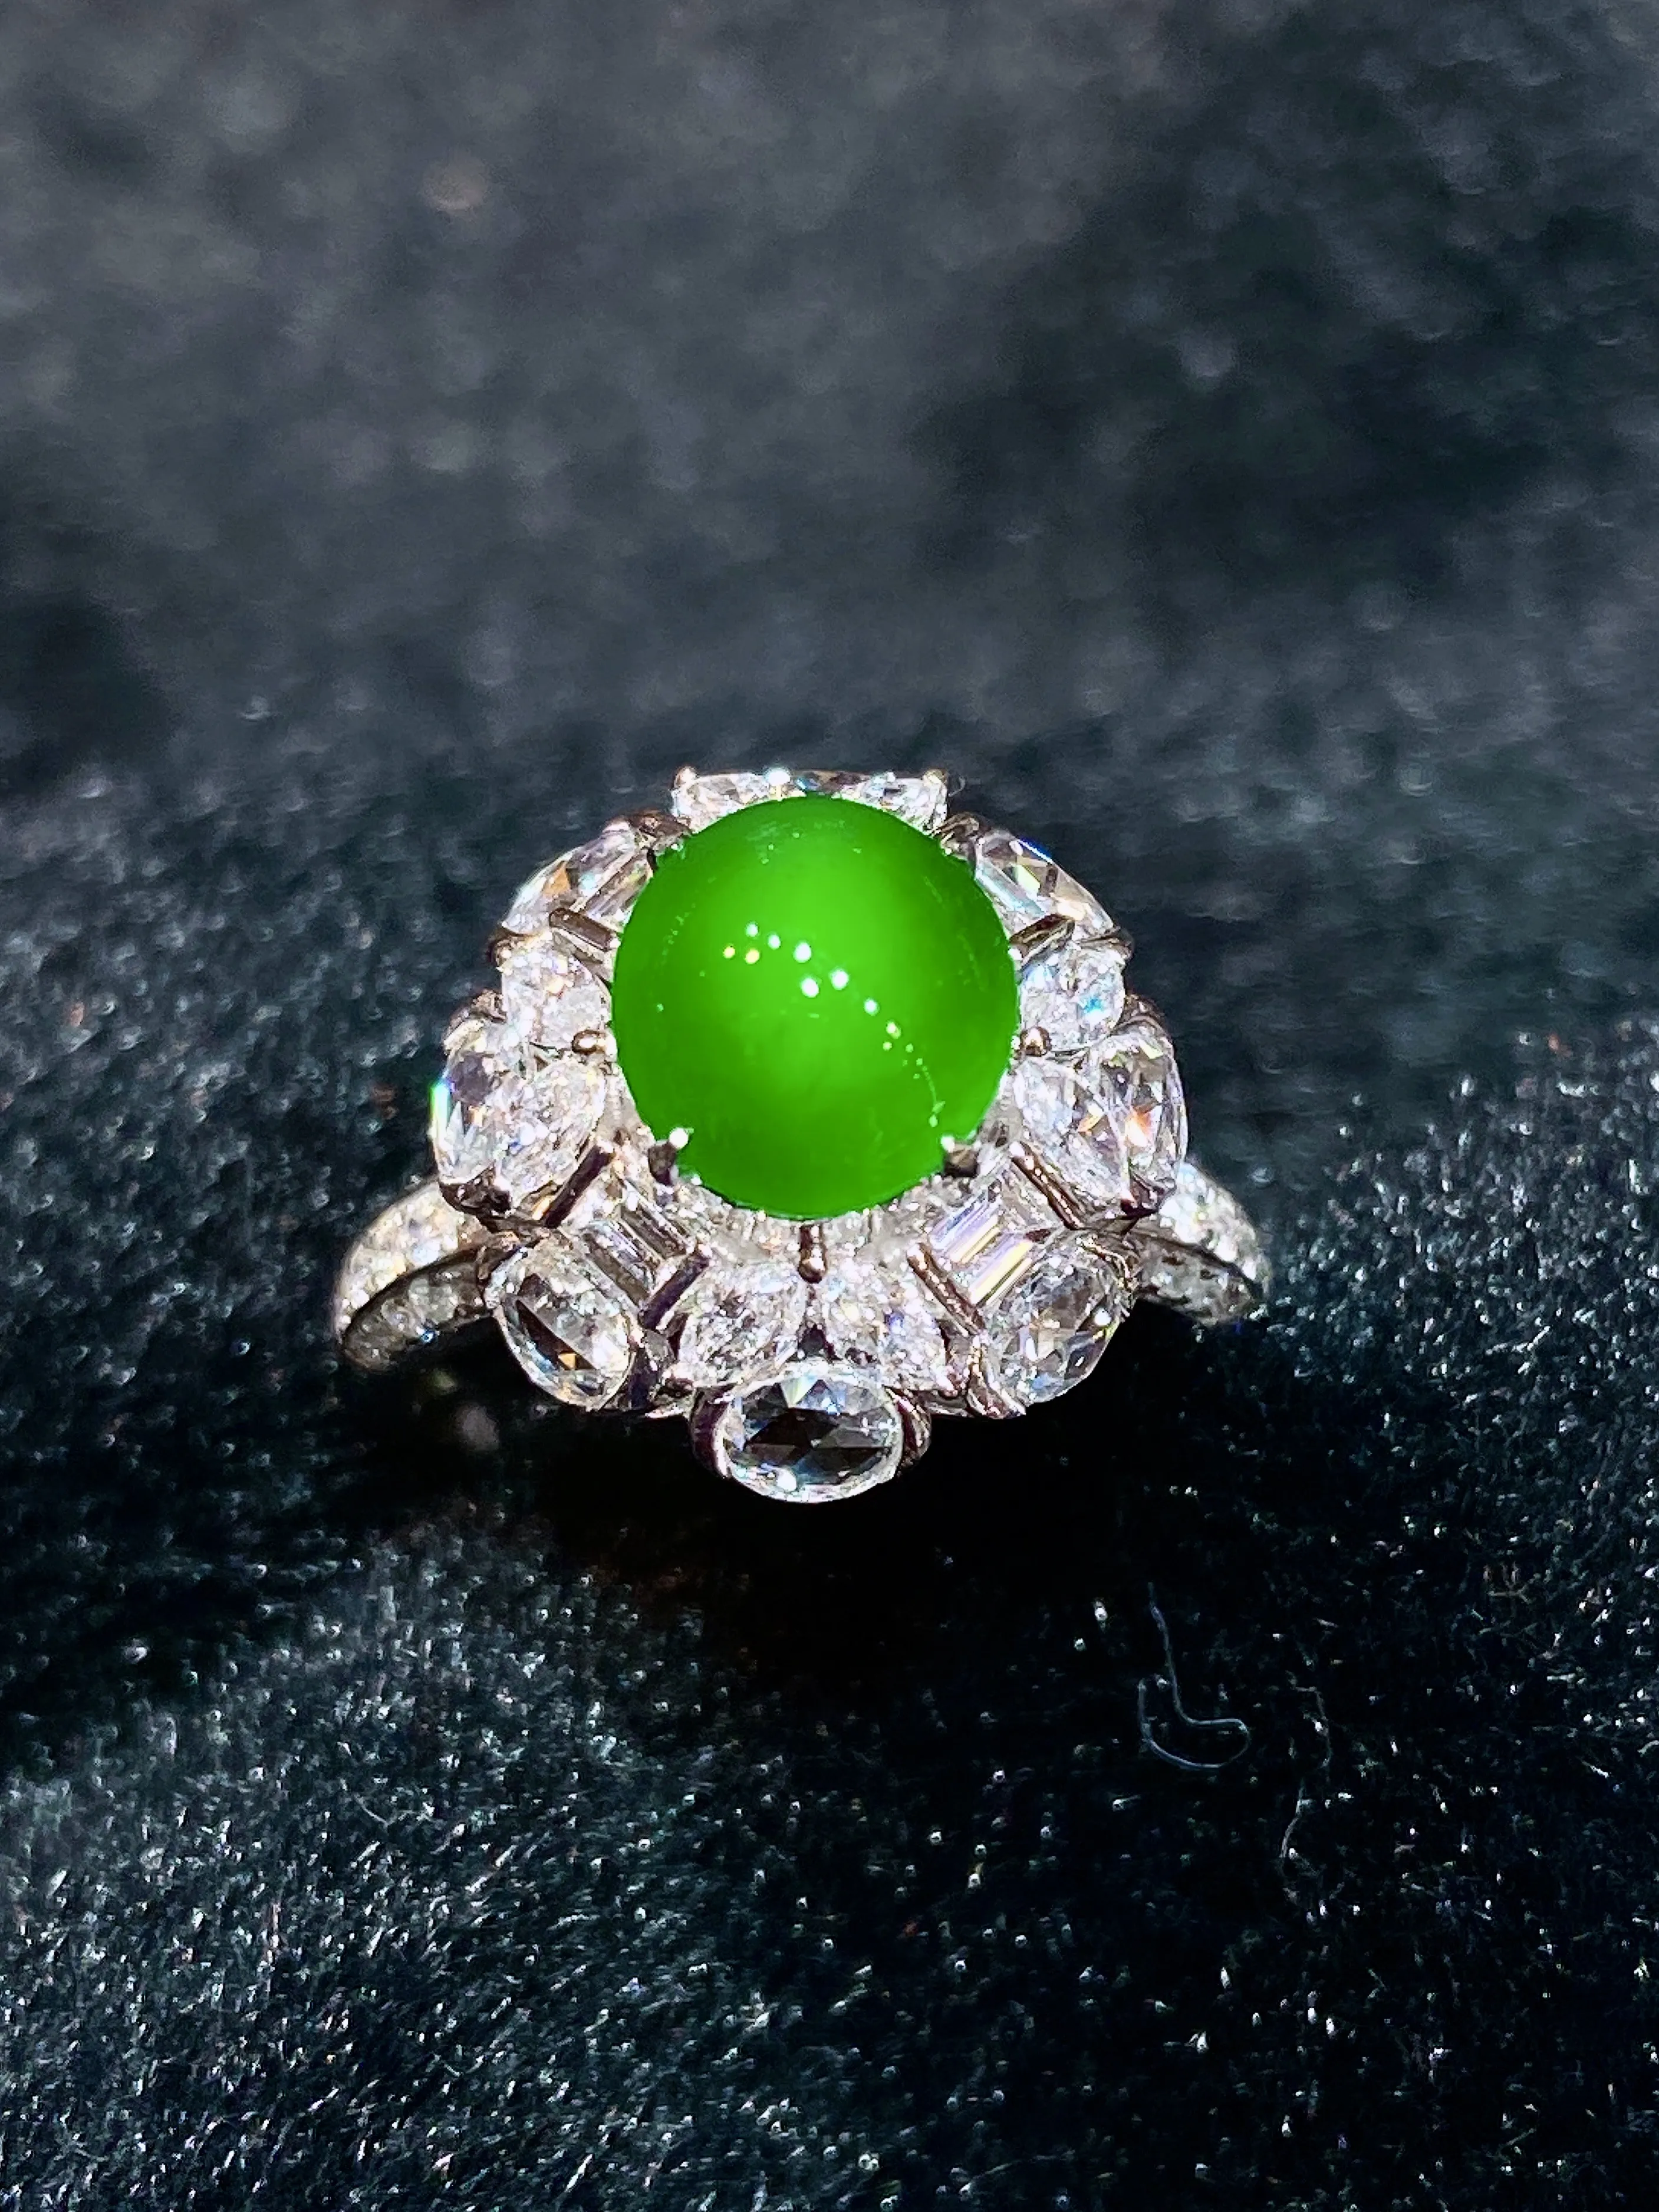 18k金钻镶嵌满绿蛋面戒指 玉质细腻 色泽艳丽 款式新颖别致 圈口14.5 整体尺寸15.6*14.